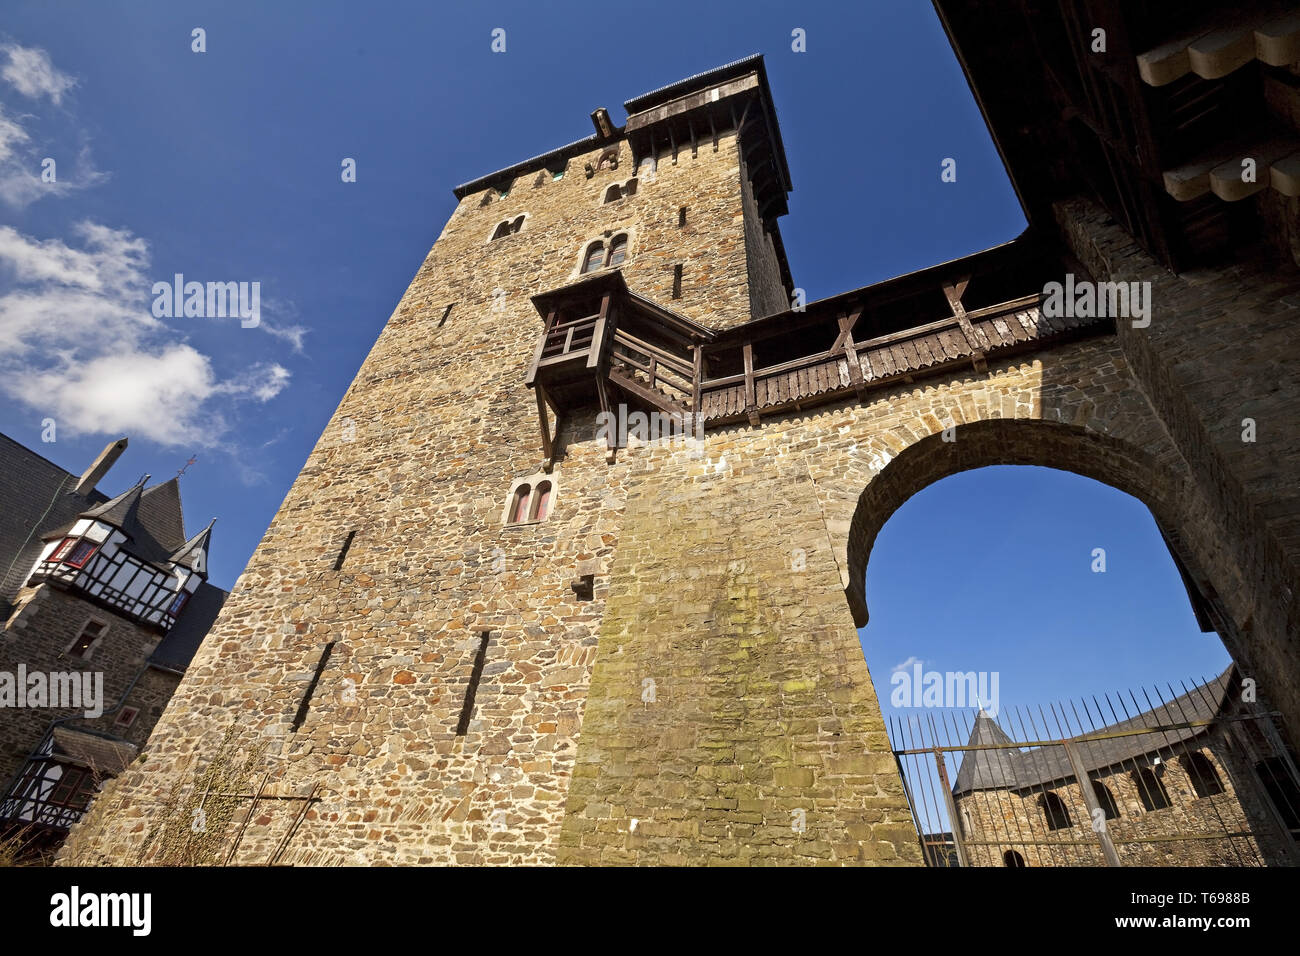 Le château de Burg, Solingen, région du Bergisches Land, Nord-Rhénanie-Westphalie, Allemagne Banque D'Images